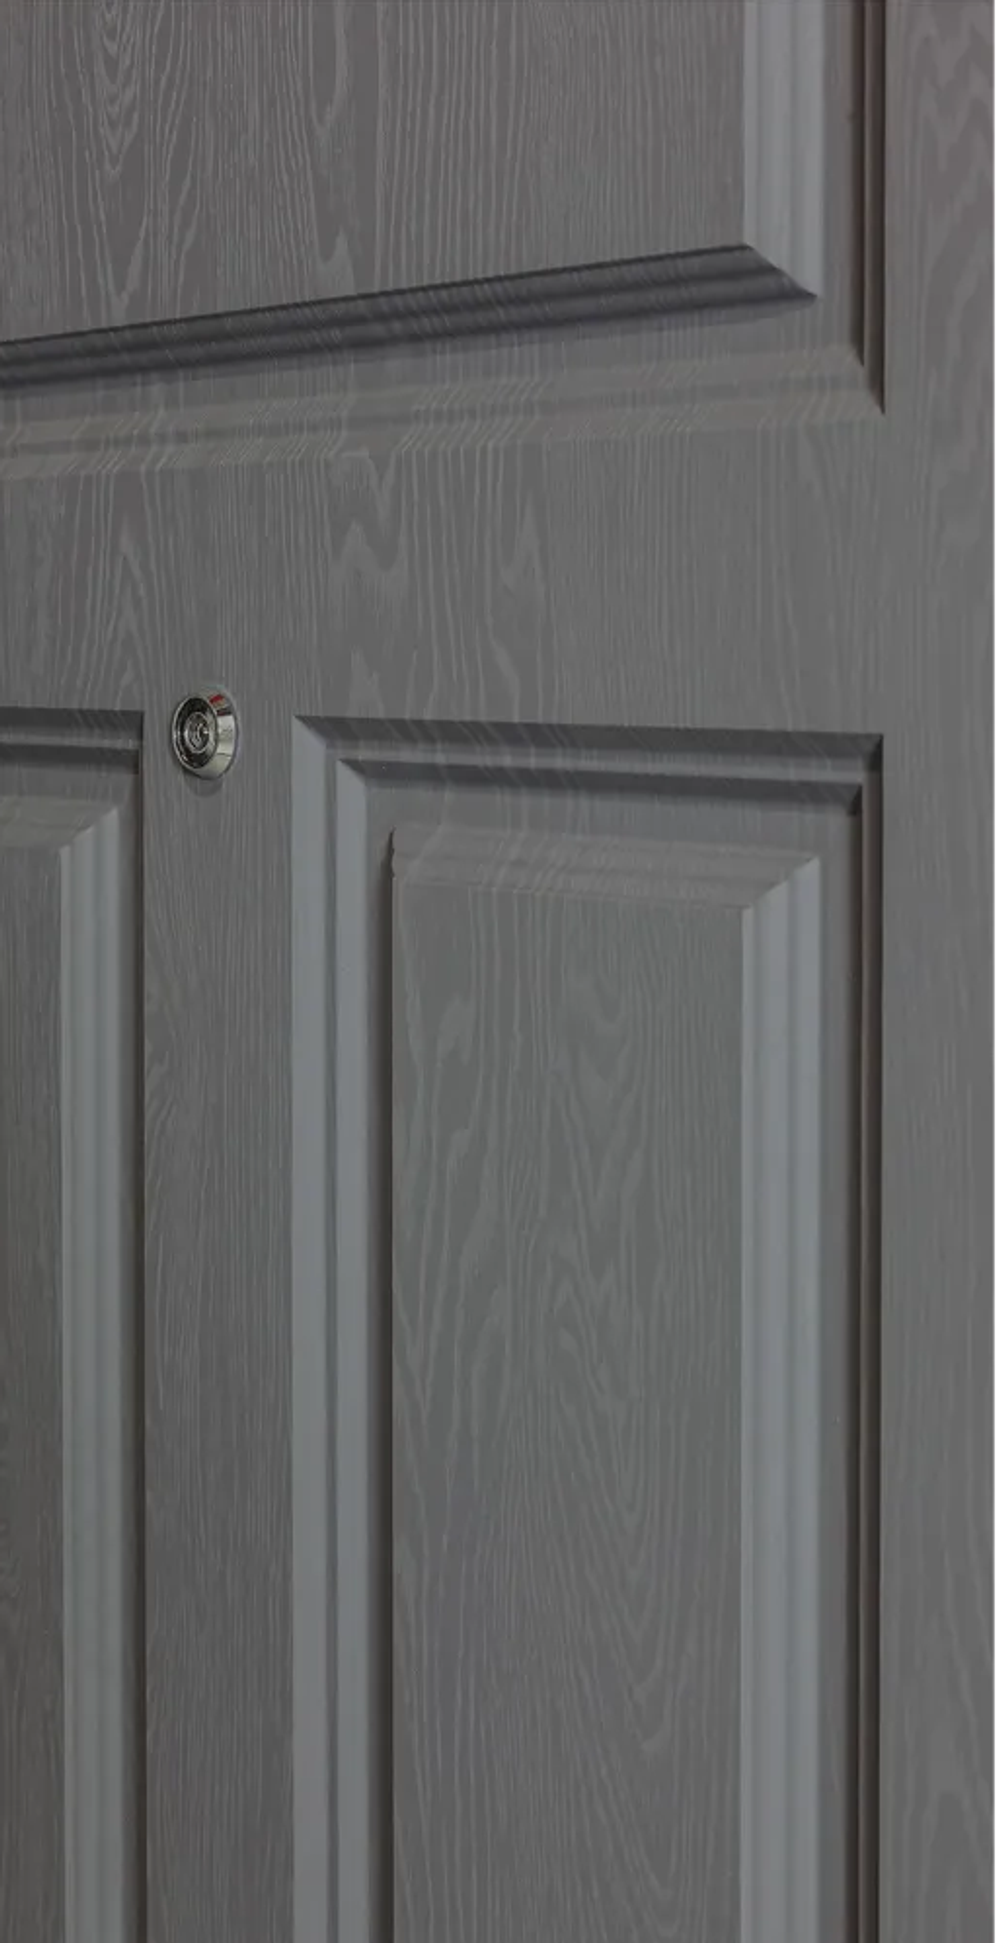 Входная дверь с шумоизоляцией STR MX-29 Ясень графит / Д7 Шампань (кремовый матовый, без текстуры)